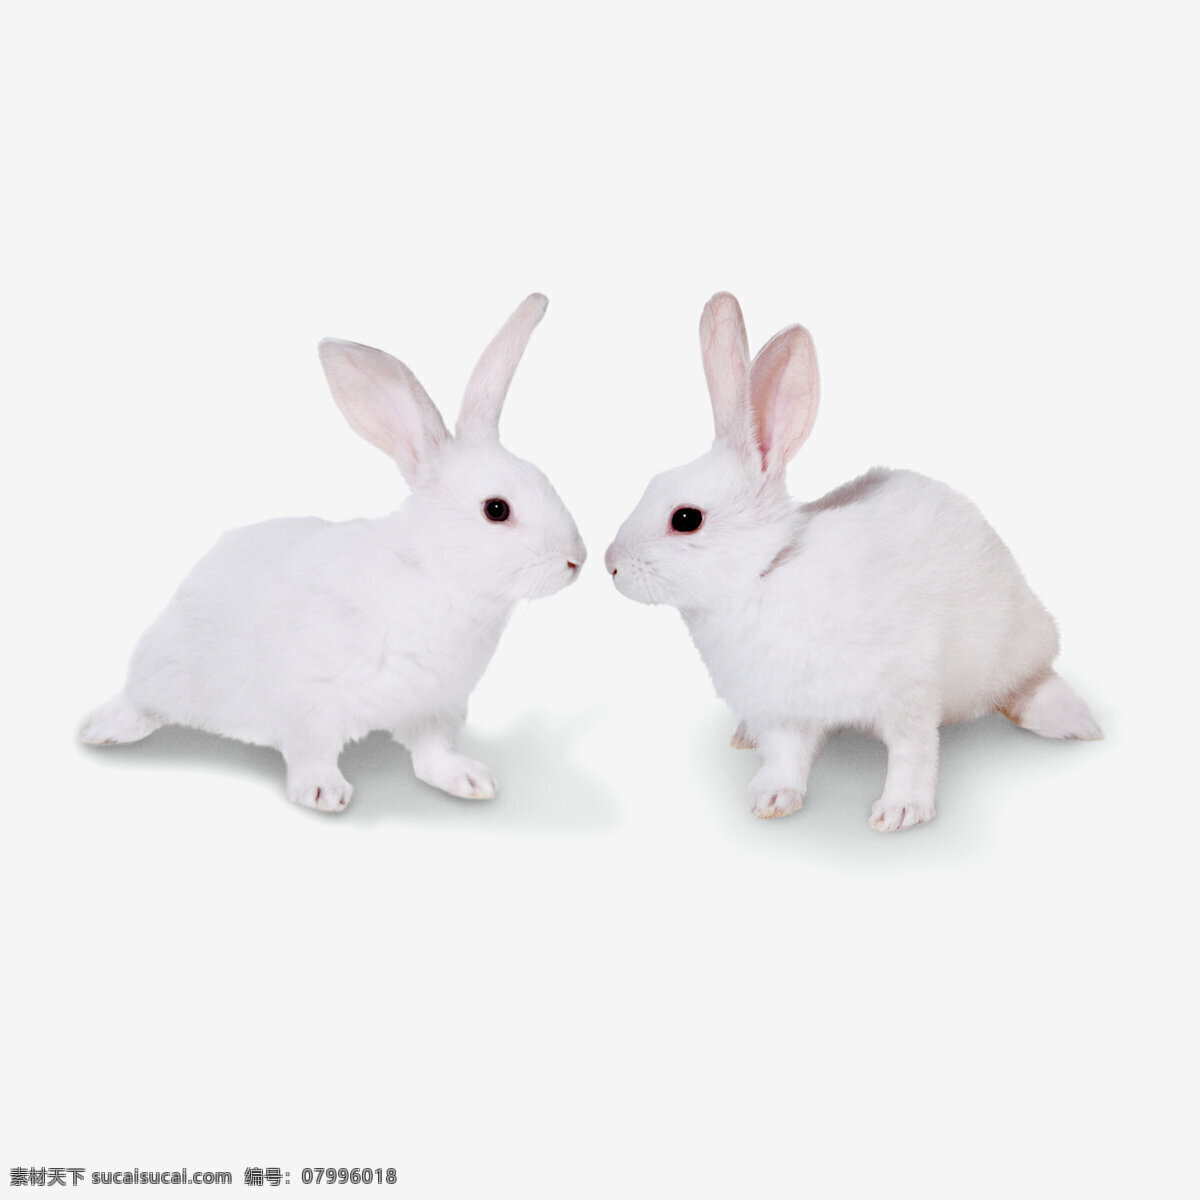 可爱 小 兔子 宠物 动物 跳跃 小白兔 一对 生物世界